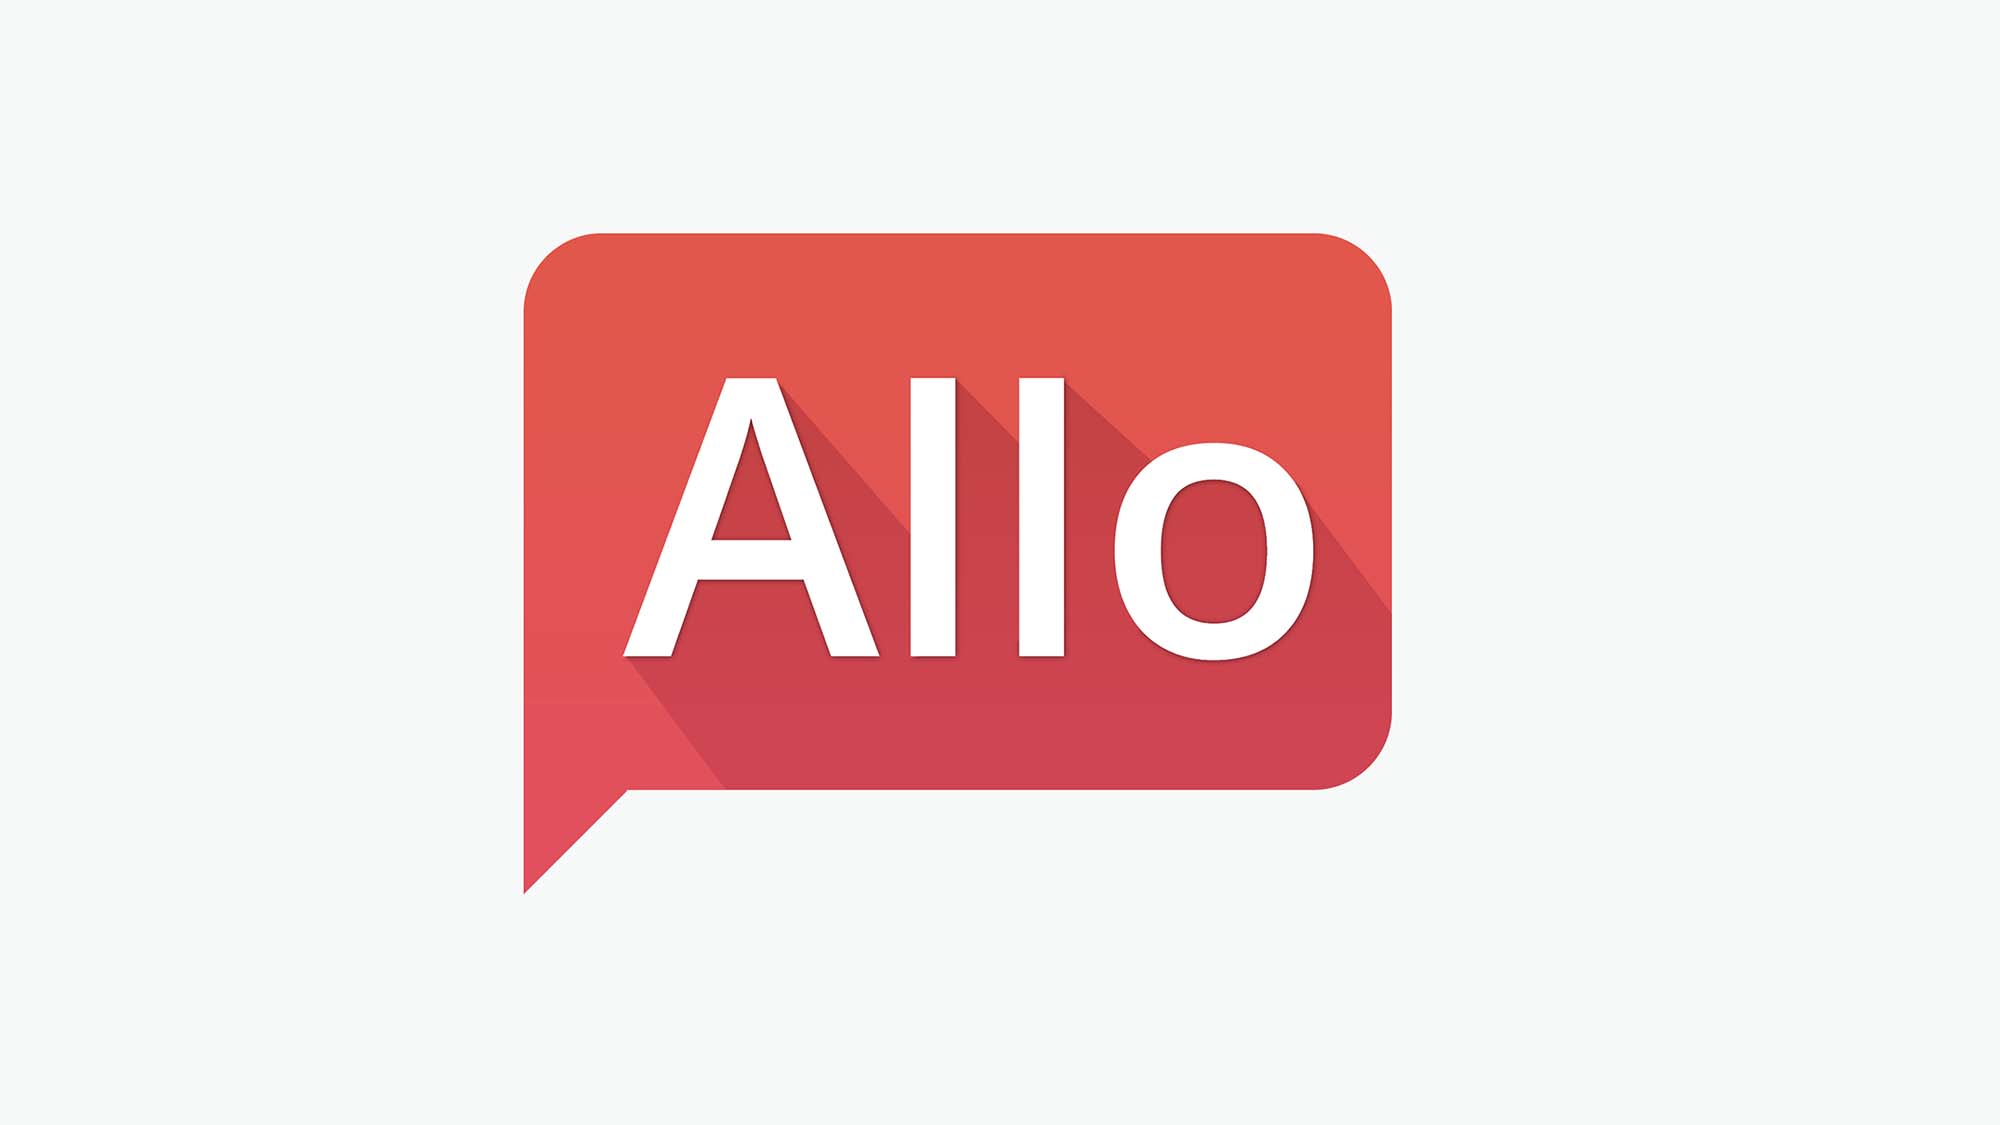 Gallery Photos of "Allo" .